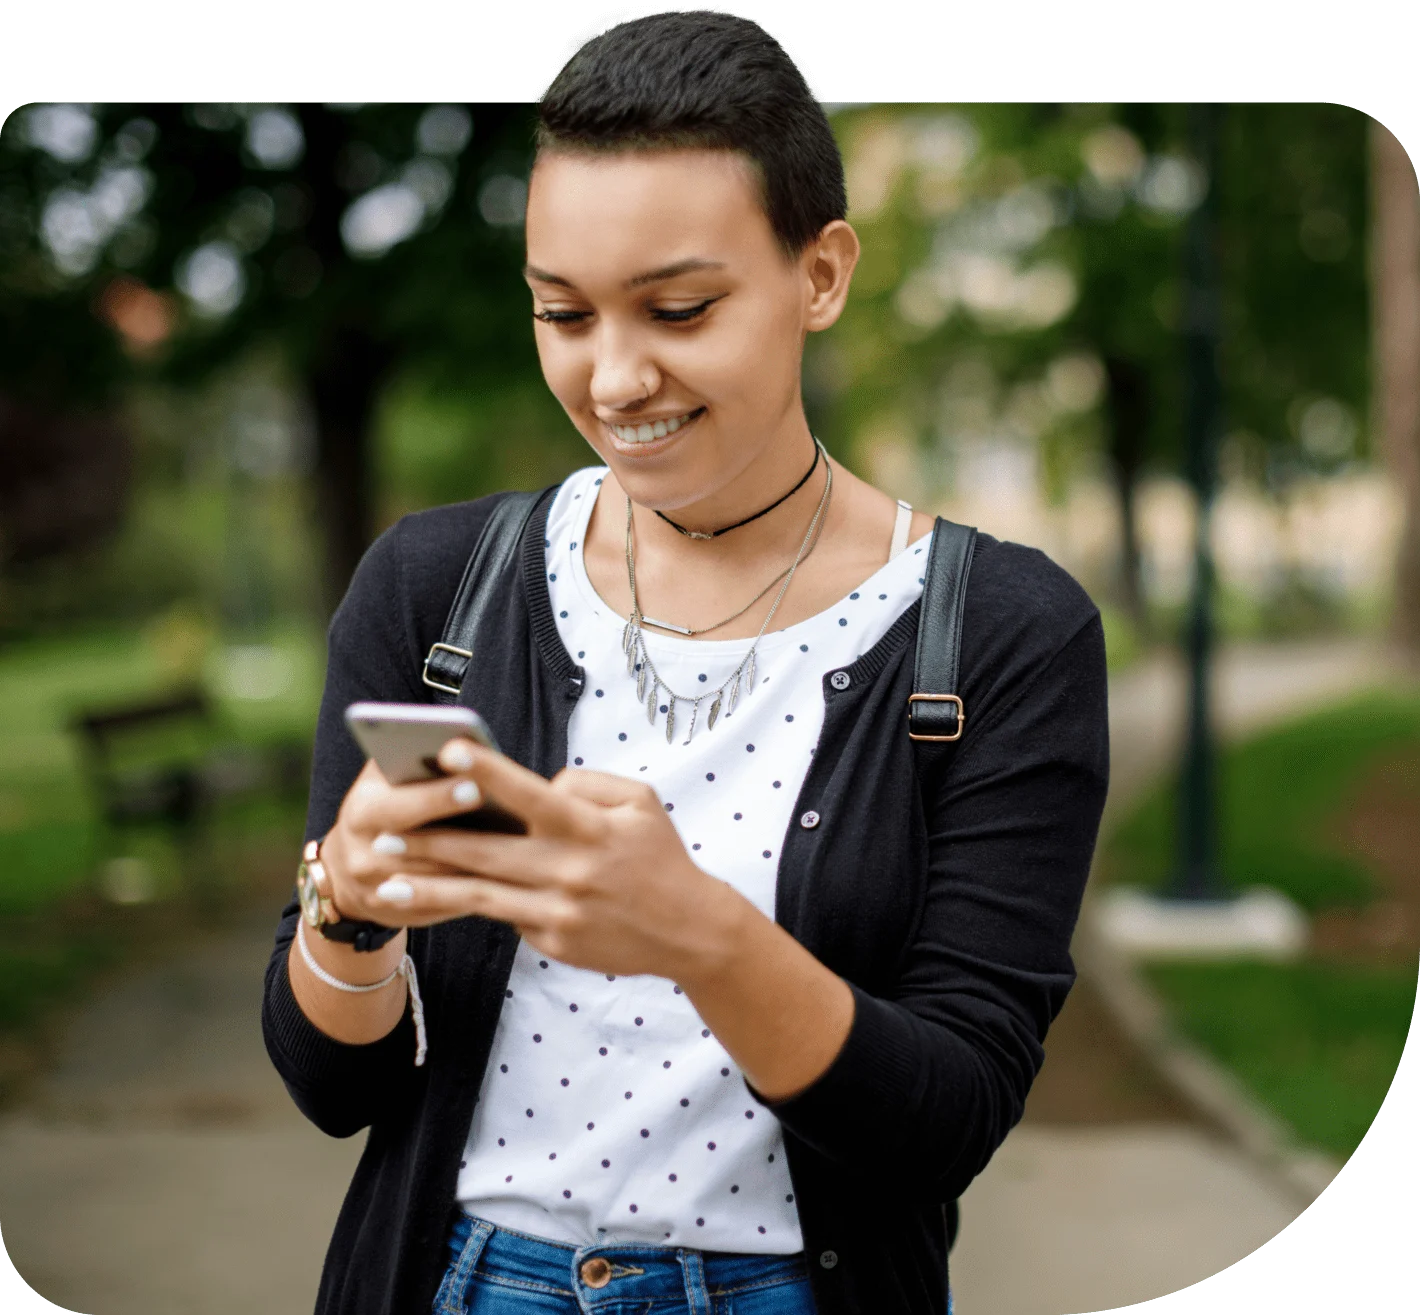 Une jeune adulte souriante clavarde avec des amis sur le téléphone intelligent qu’elle a reçu dans le cadre du programme Mobilité pour l’avenir.